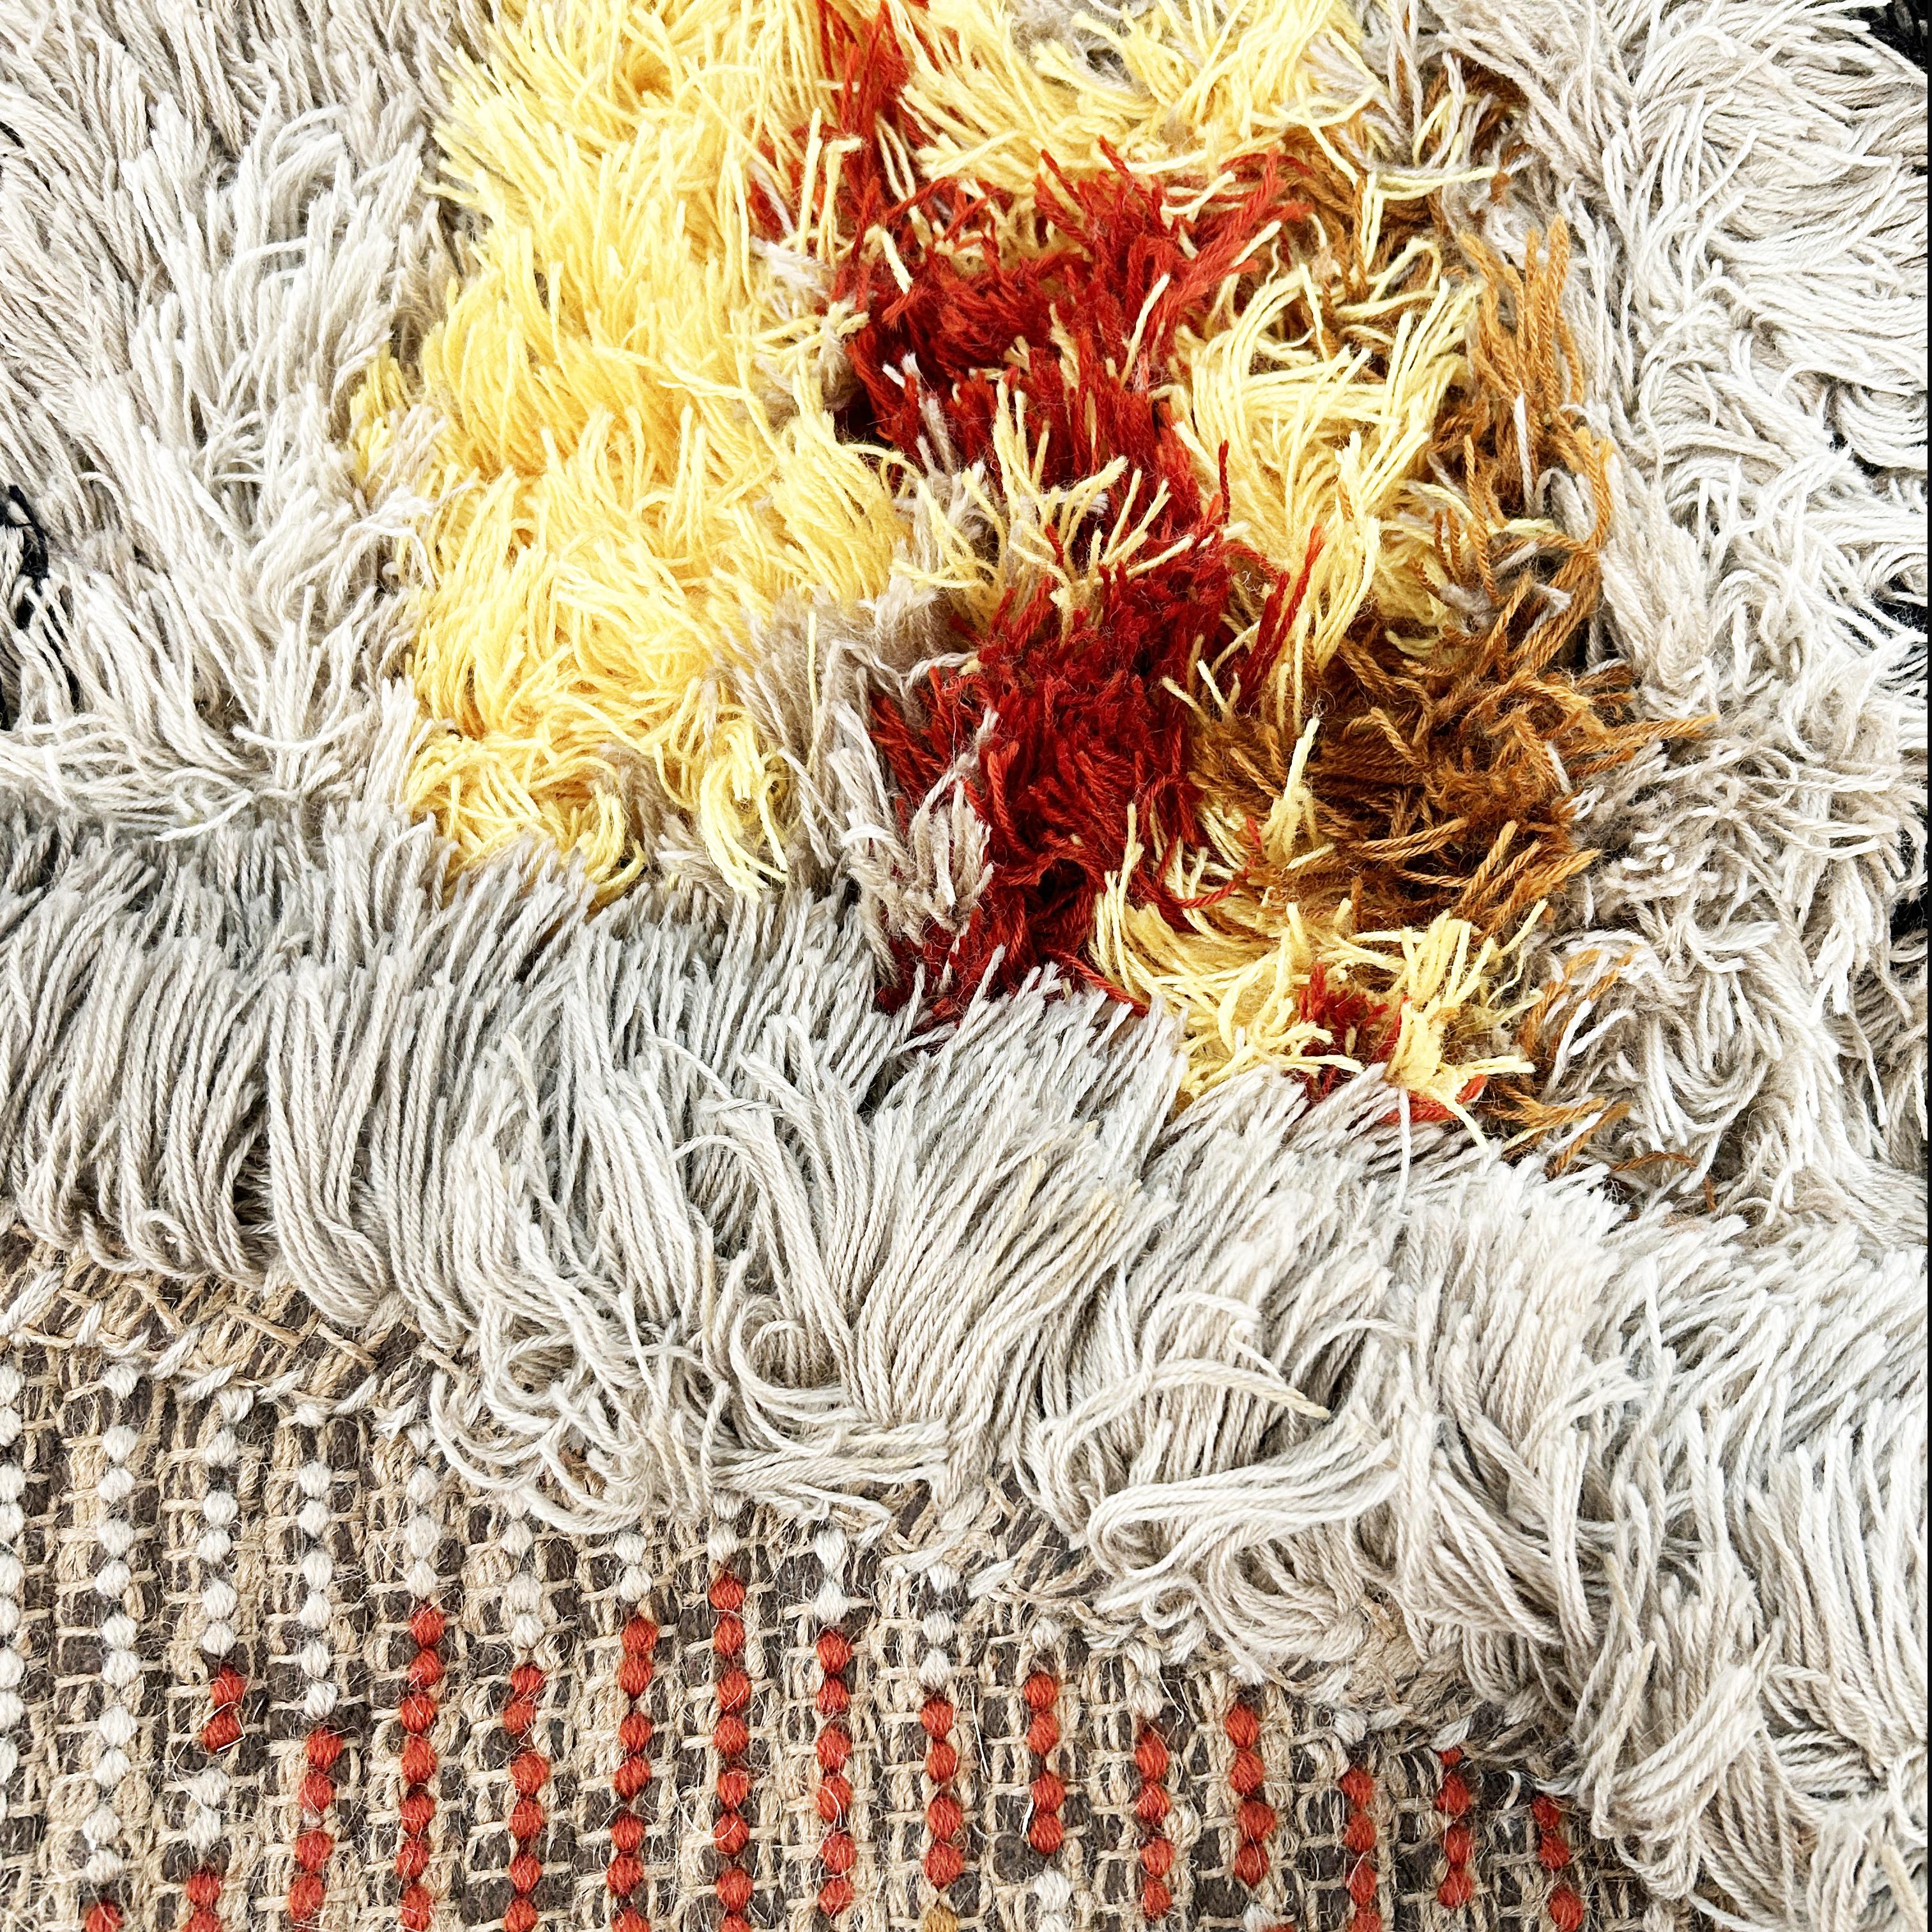 Tapeto in fibra acrilica a disegno informale, manifattura Dal LAgo, anni '70. Il tappeto è un fondo di magazzino ed è stato pulito professionalmente.